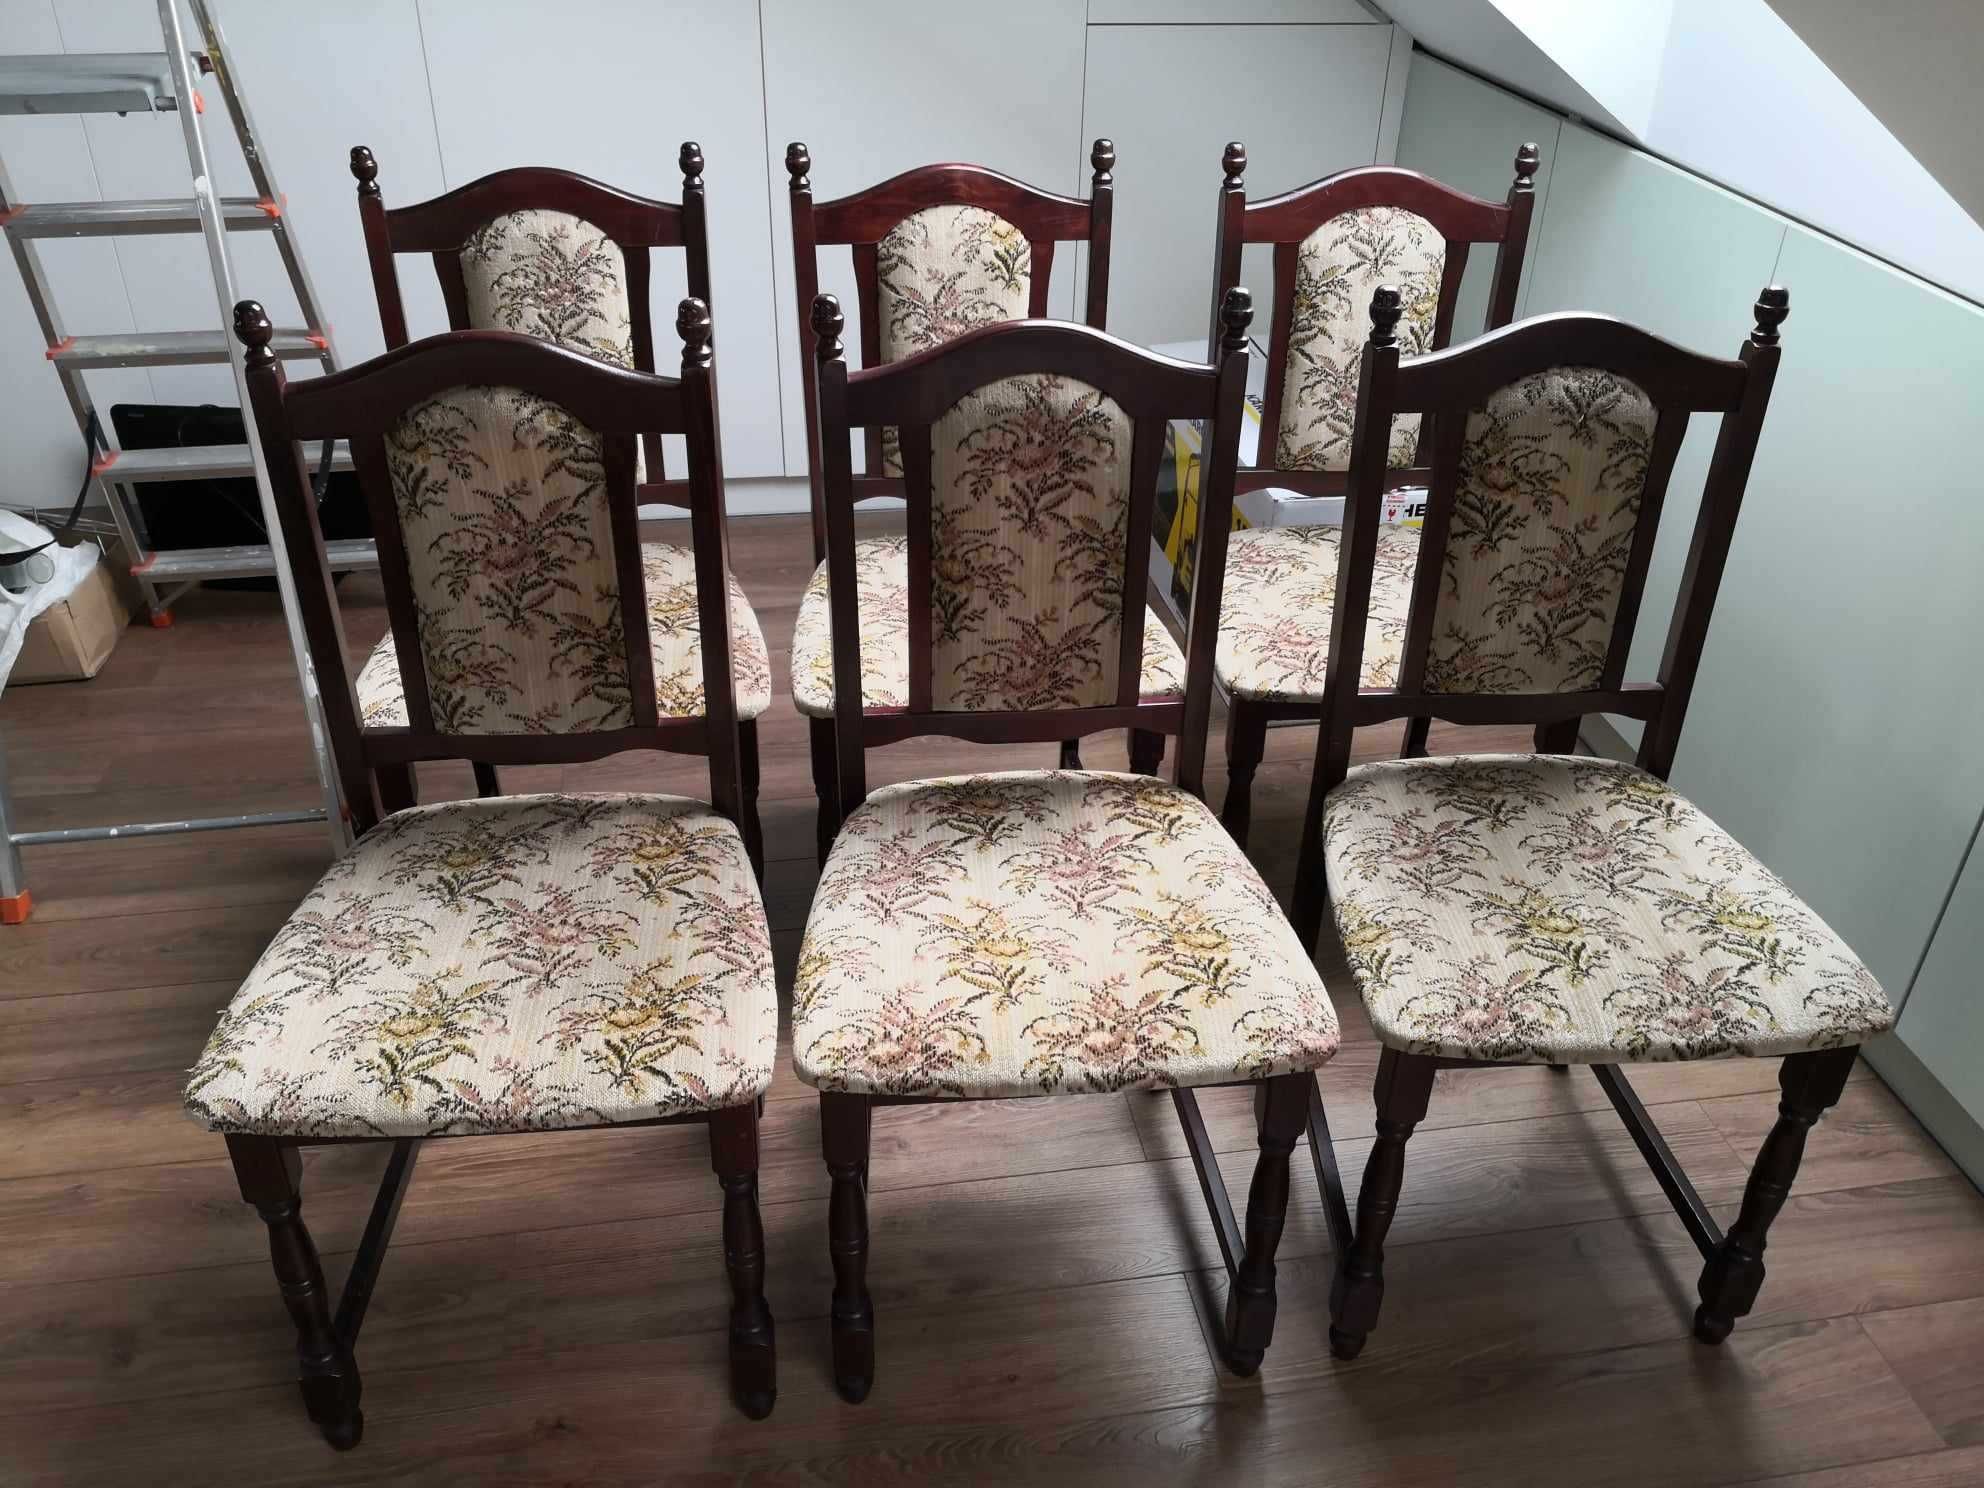 Stół rozkładany i 6 krzeseł